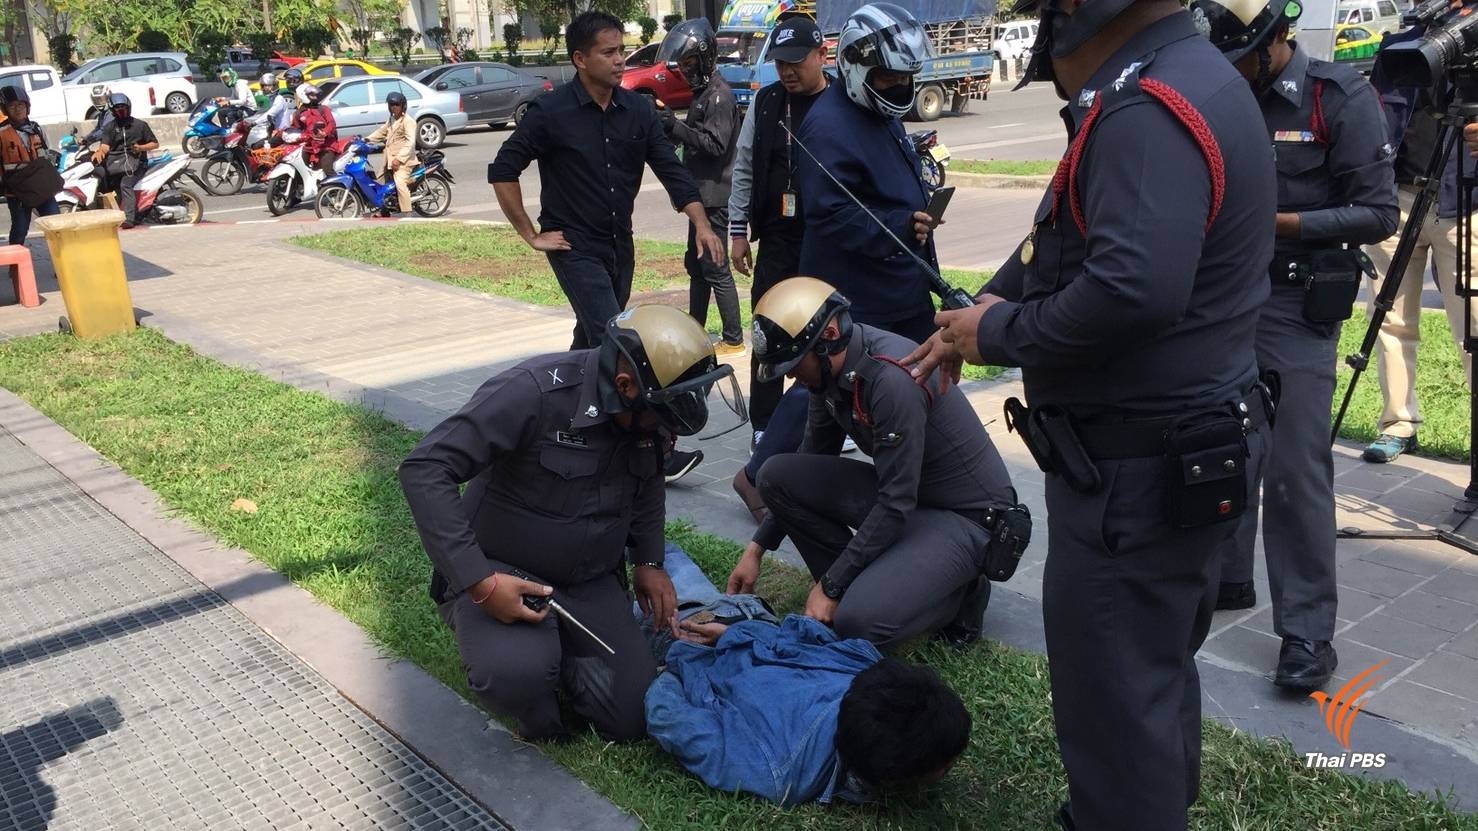 ชายถือมีดวิ่งเข้าไทยพีบีเอส ตำรวจรวบตัวทันควัน